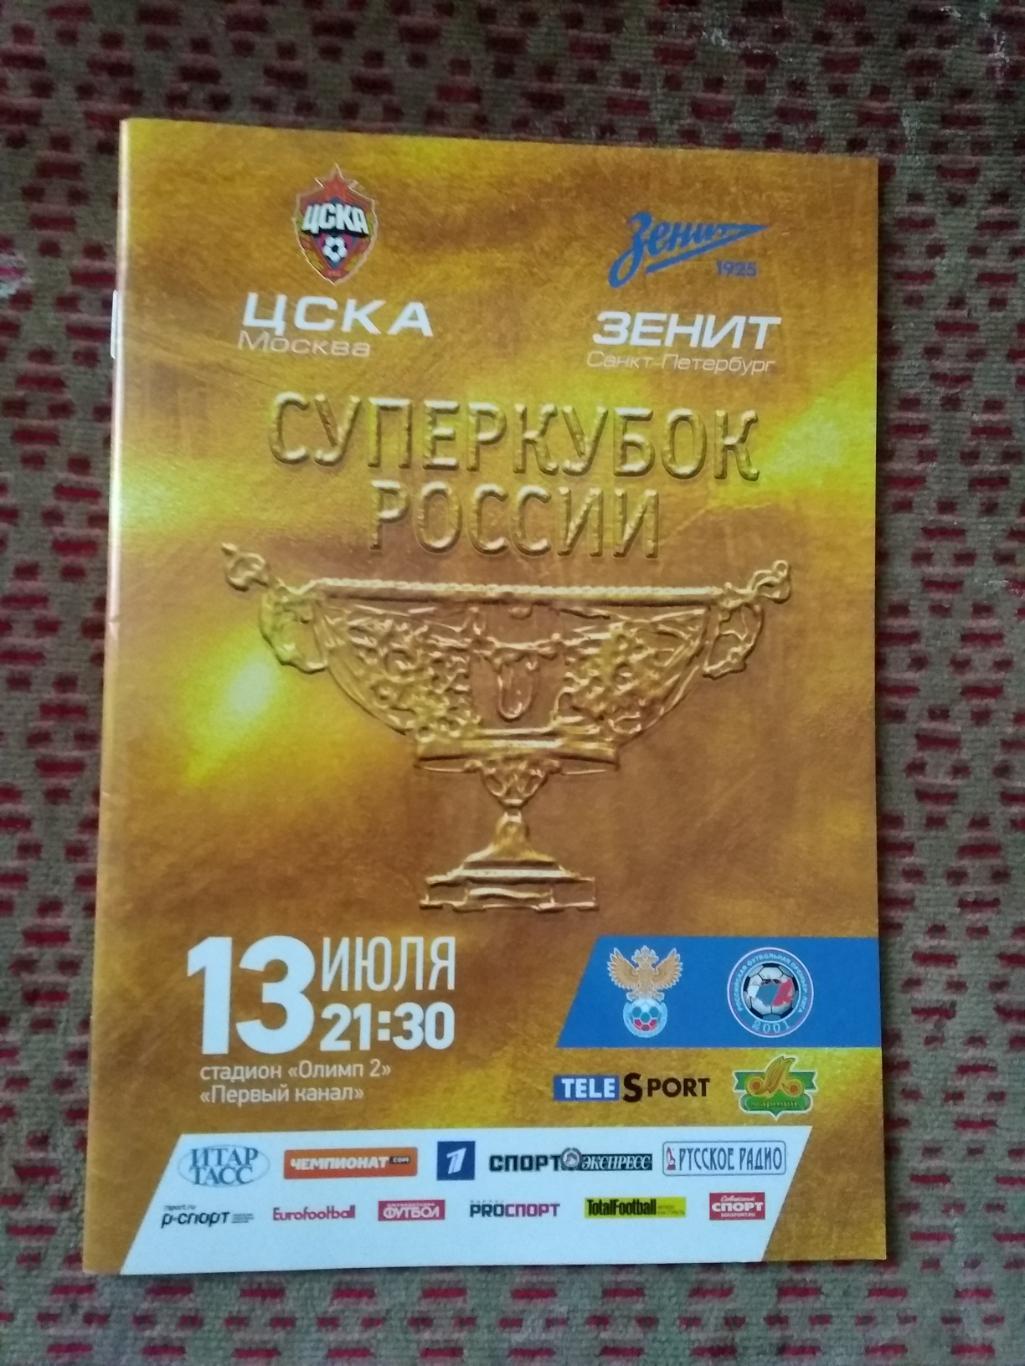 ЦСКА (Москва) - Зенит (Санкт-Петербург).Суперкубок России 2013 г.